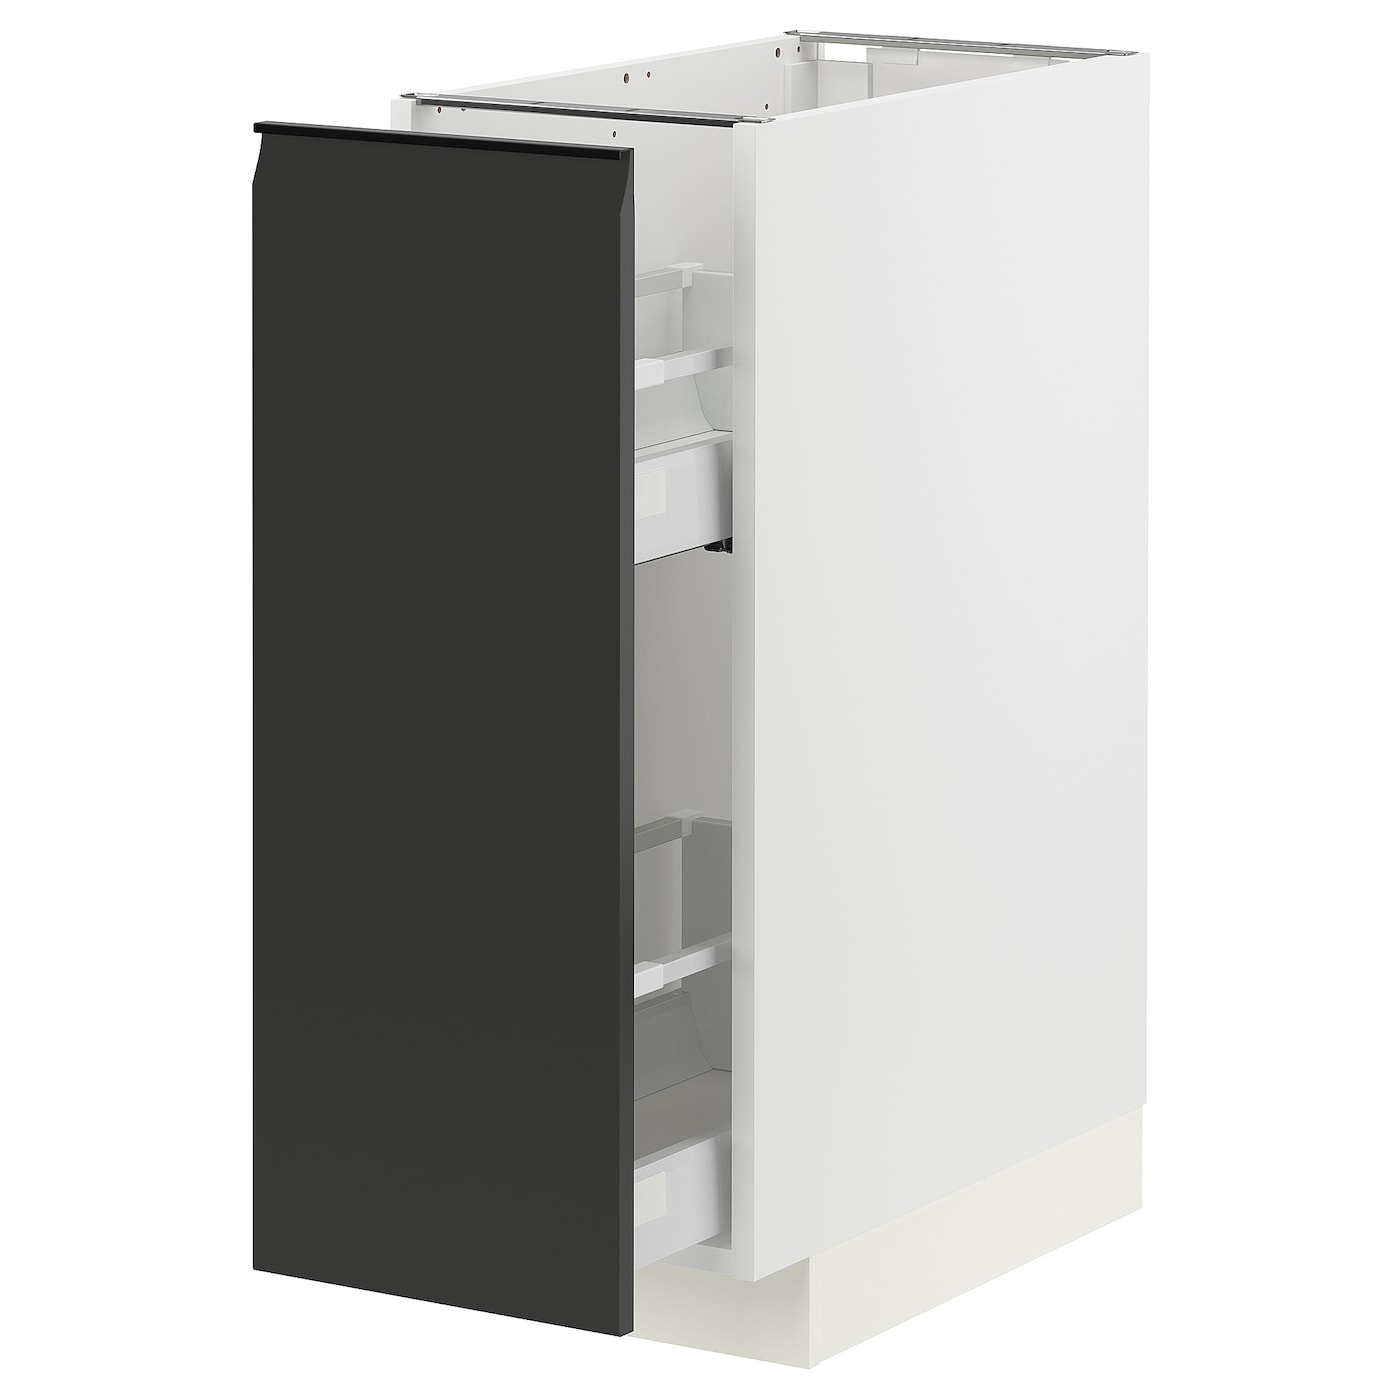 Напольный шкаф - IKEA METOD MAXIMERA, 88x62x30см, черный/белый, МЕТОД МАКСИМЕРА ИКЕА